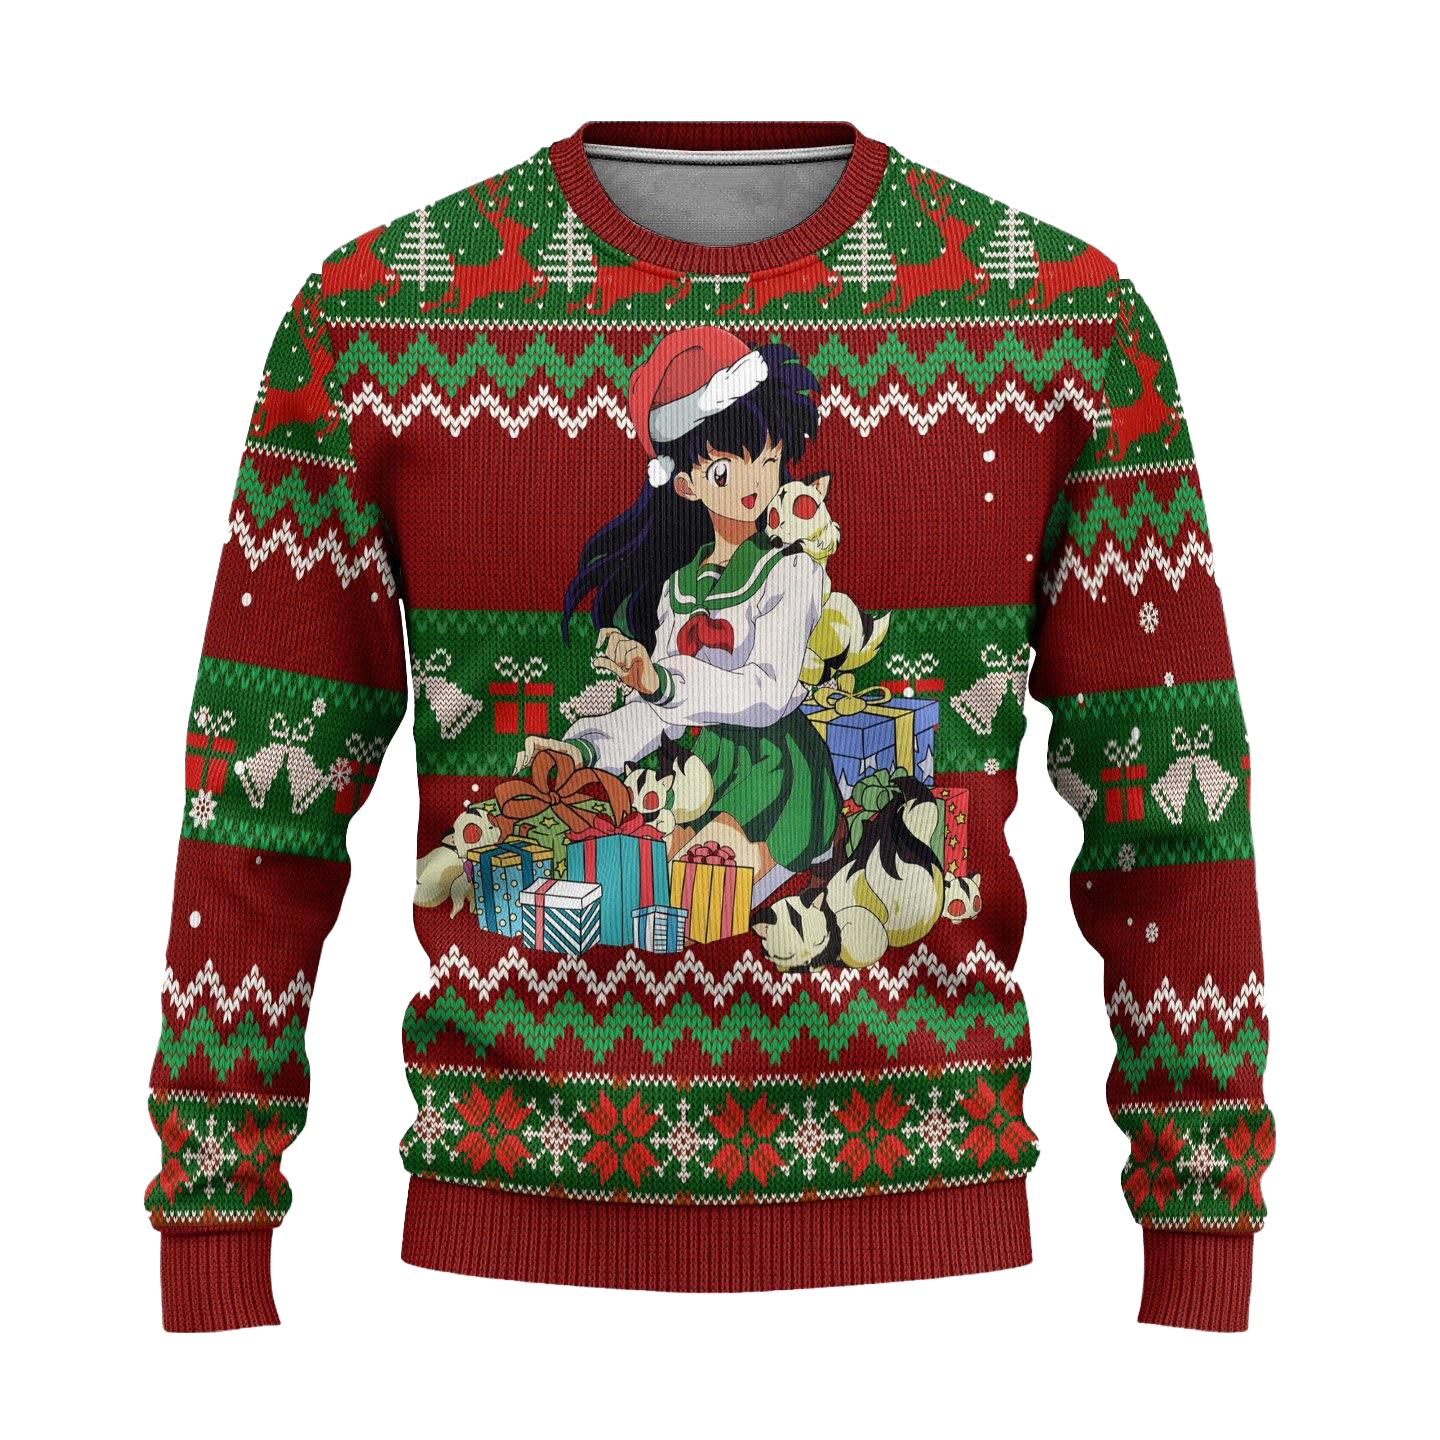 Kagome Ugly Christmas Sweater Inuyasha Anime Xmas Gift